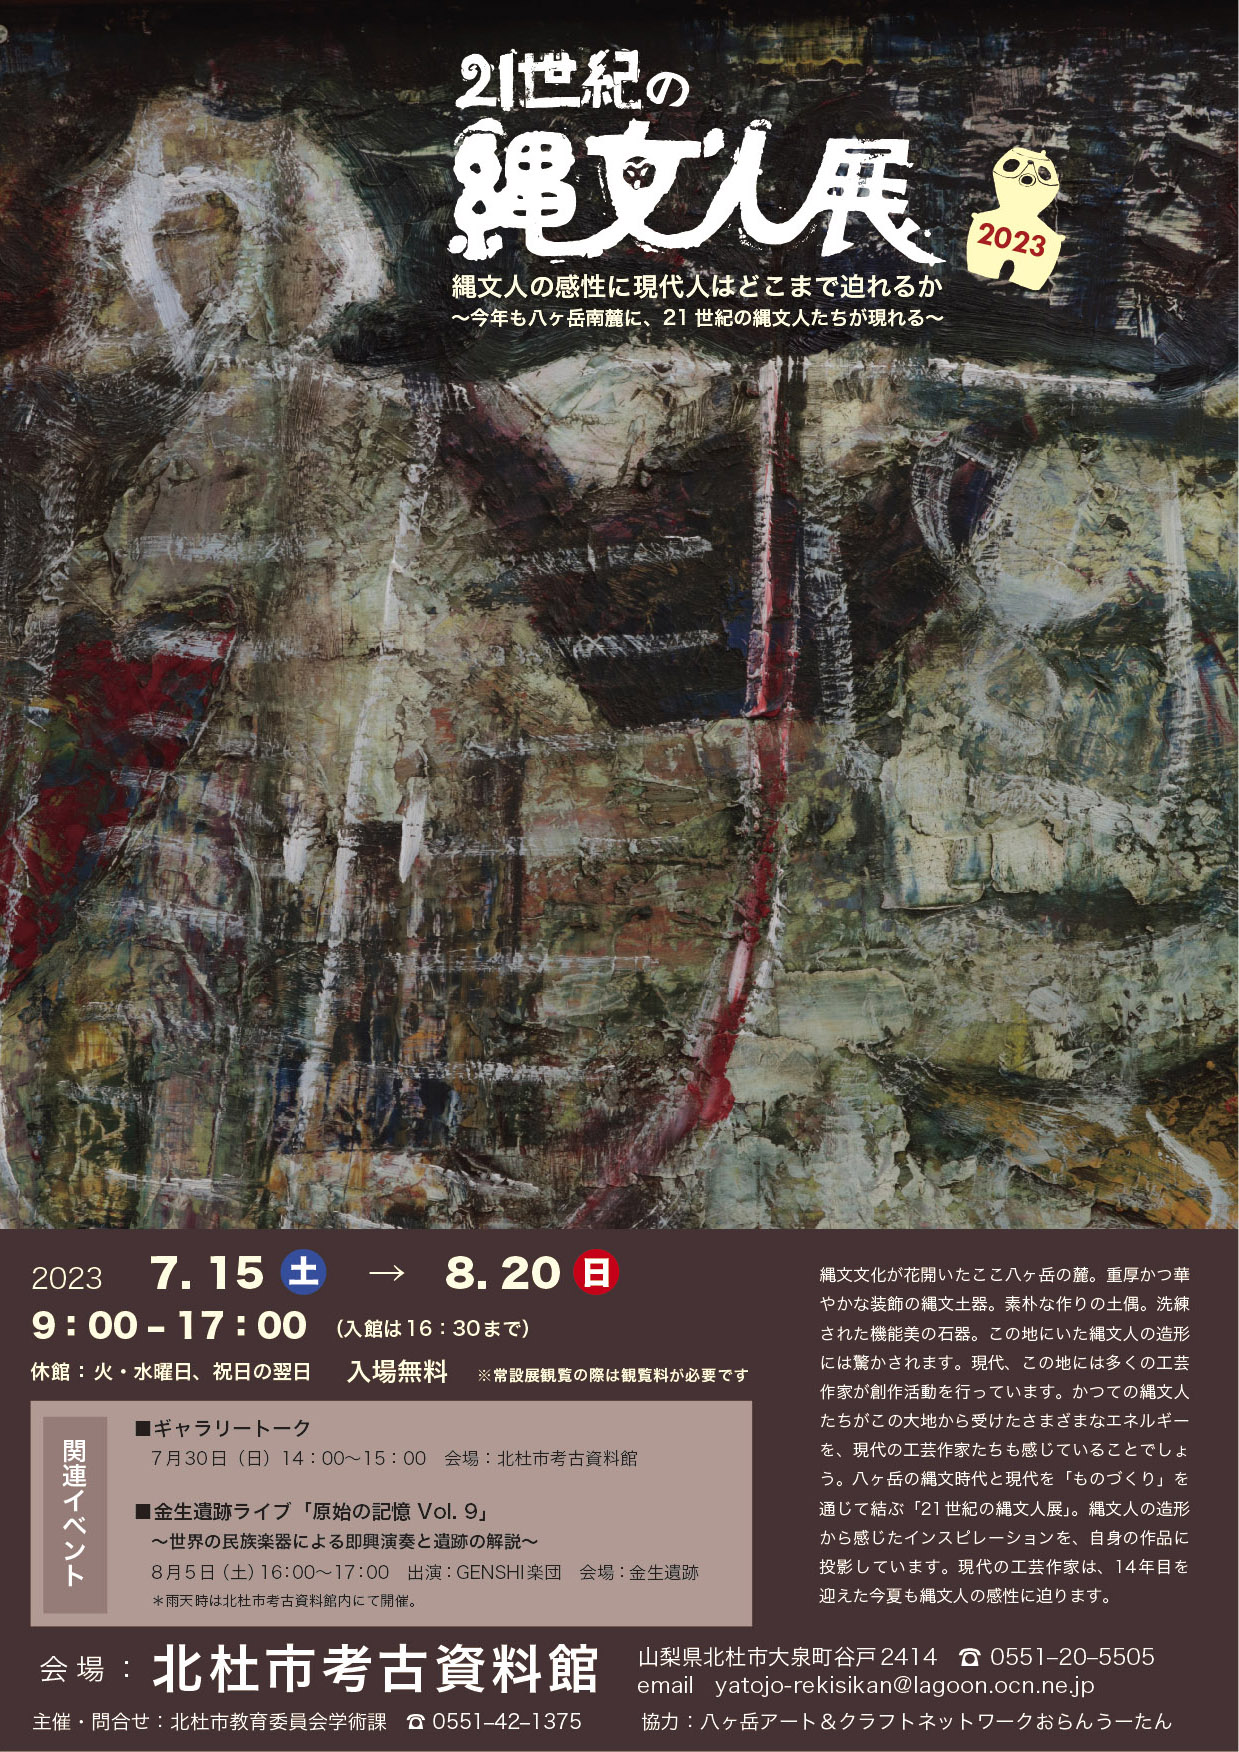 『21世紀の縄文人展 2023』大泉町谷戸の北杜市考古資料館にて開催